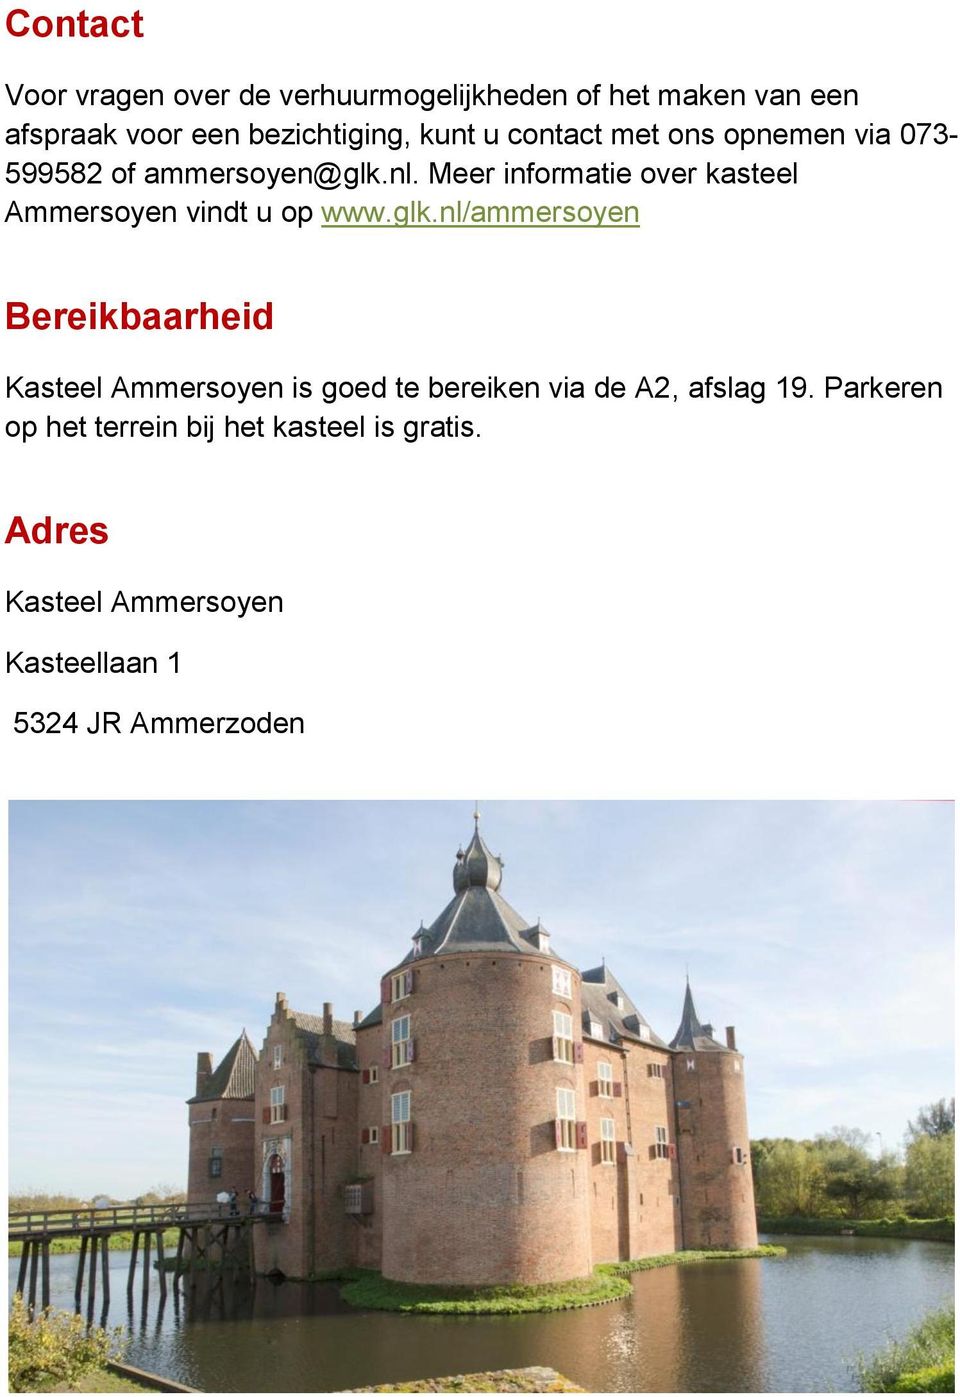 Meer informatie over kasteel Ammersoyen vindt u op www.glk.